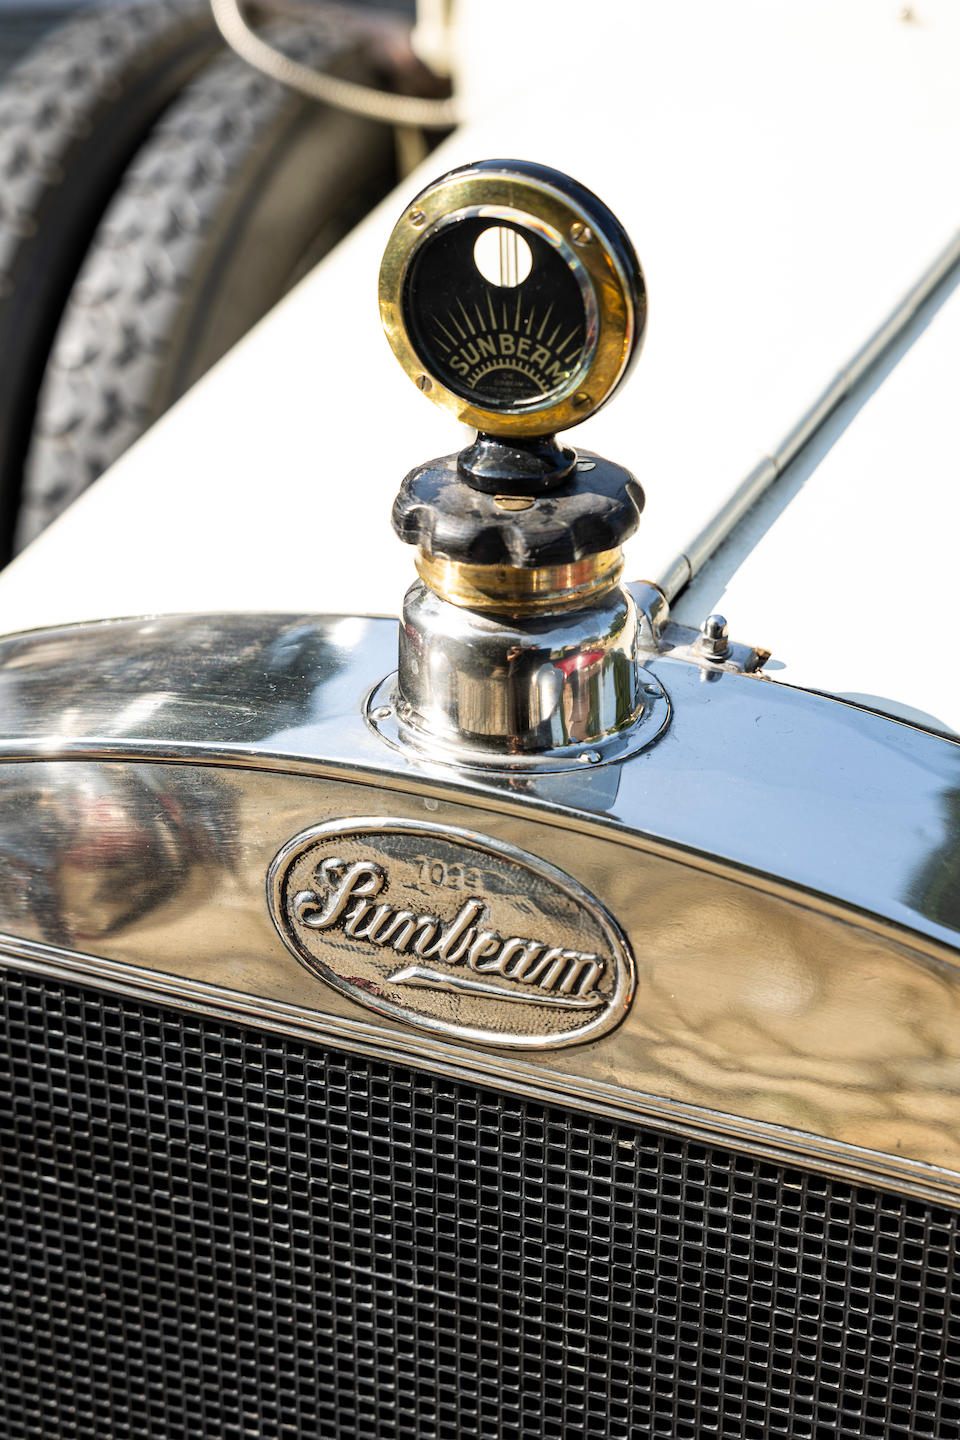 1913 Sunbeam  12/16hp Tourer  Chassis no. 6424 Engine no. 6750